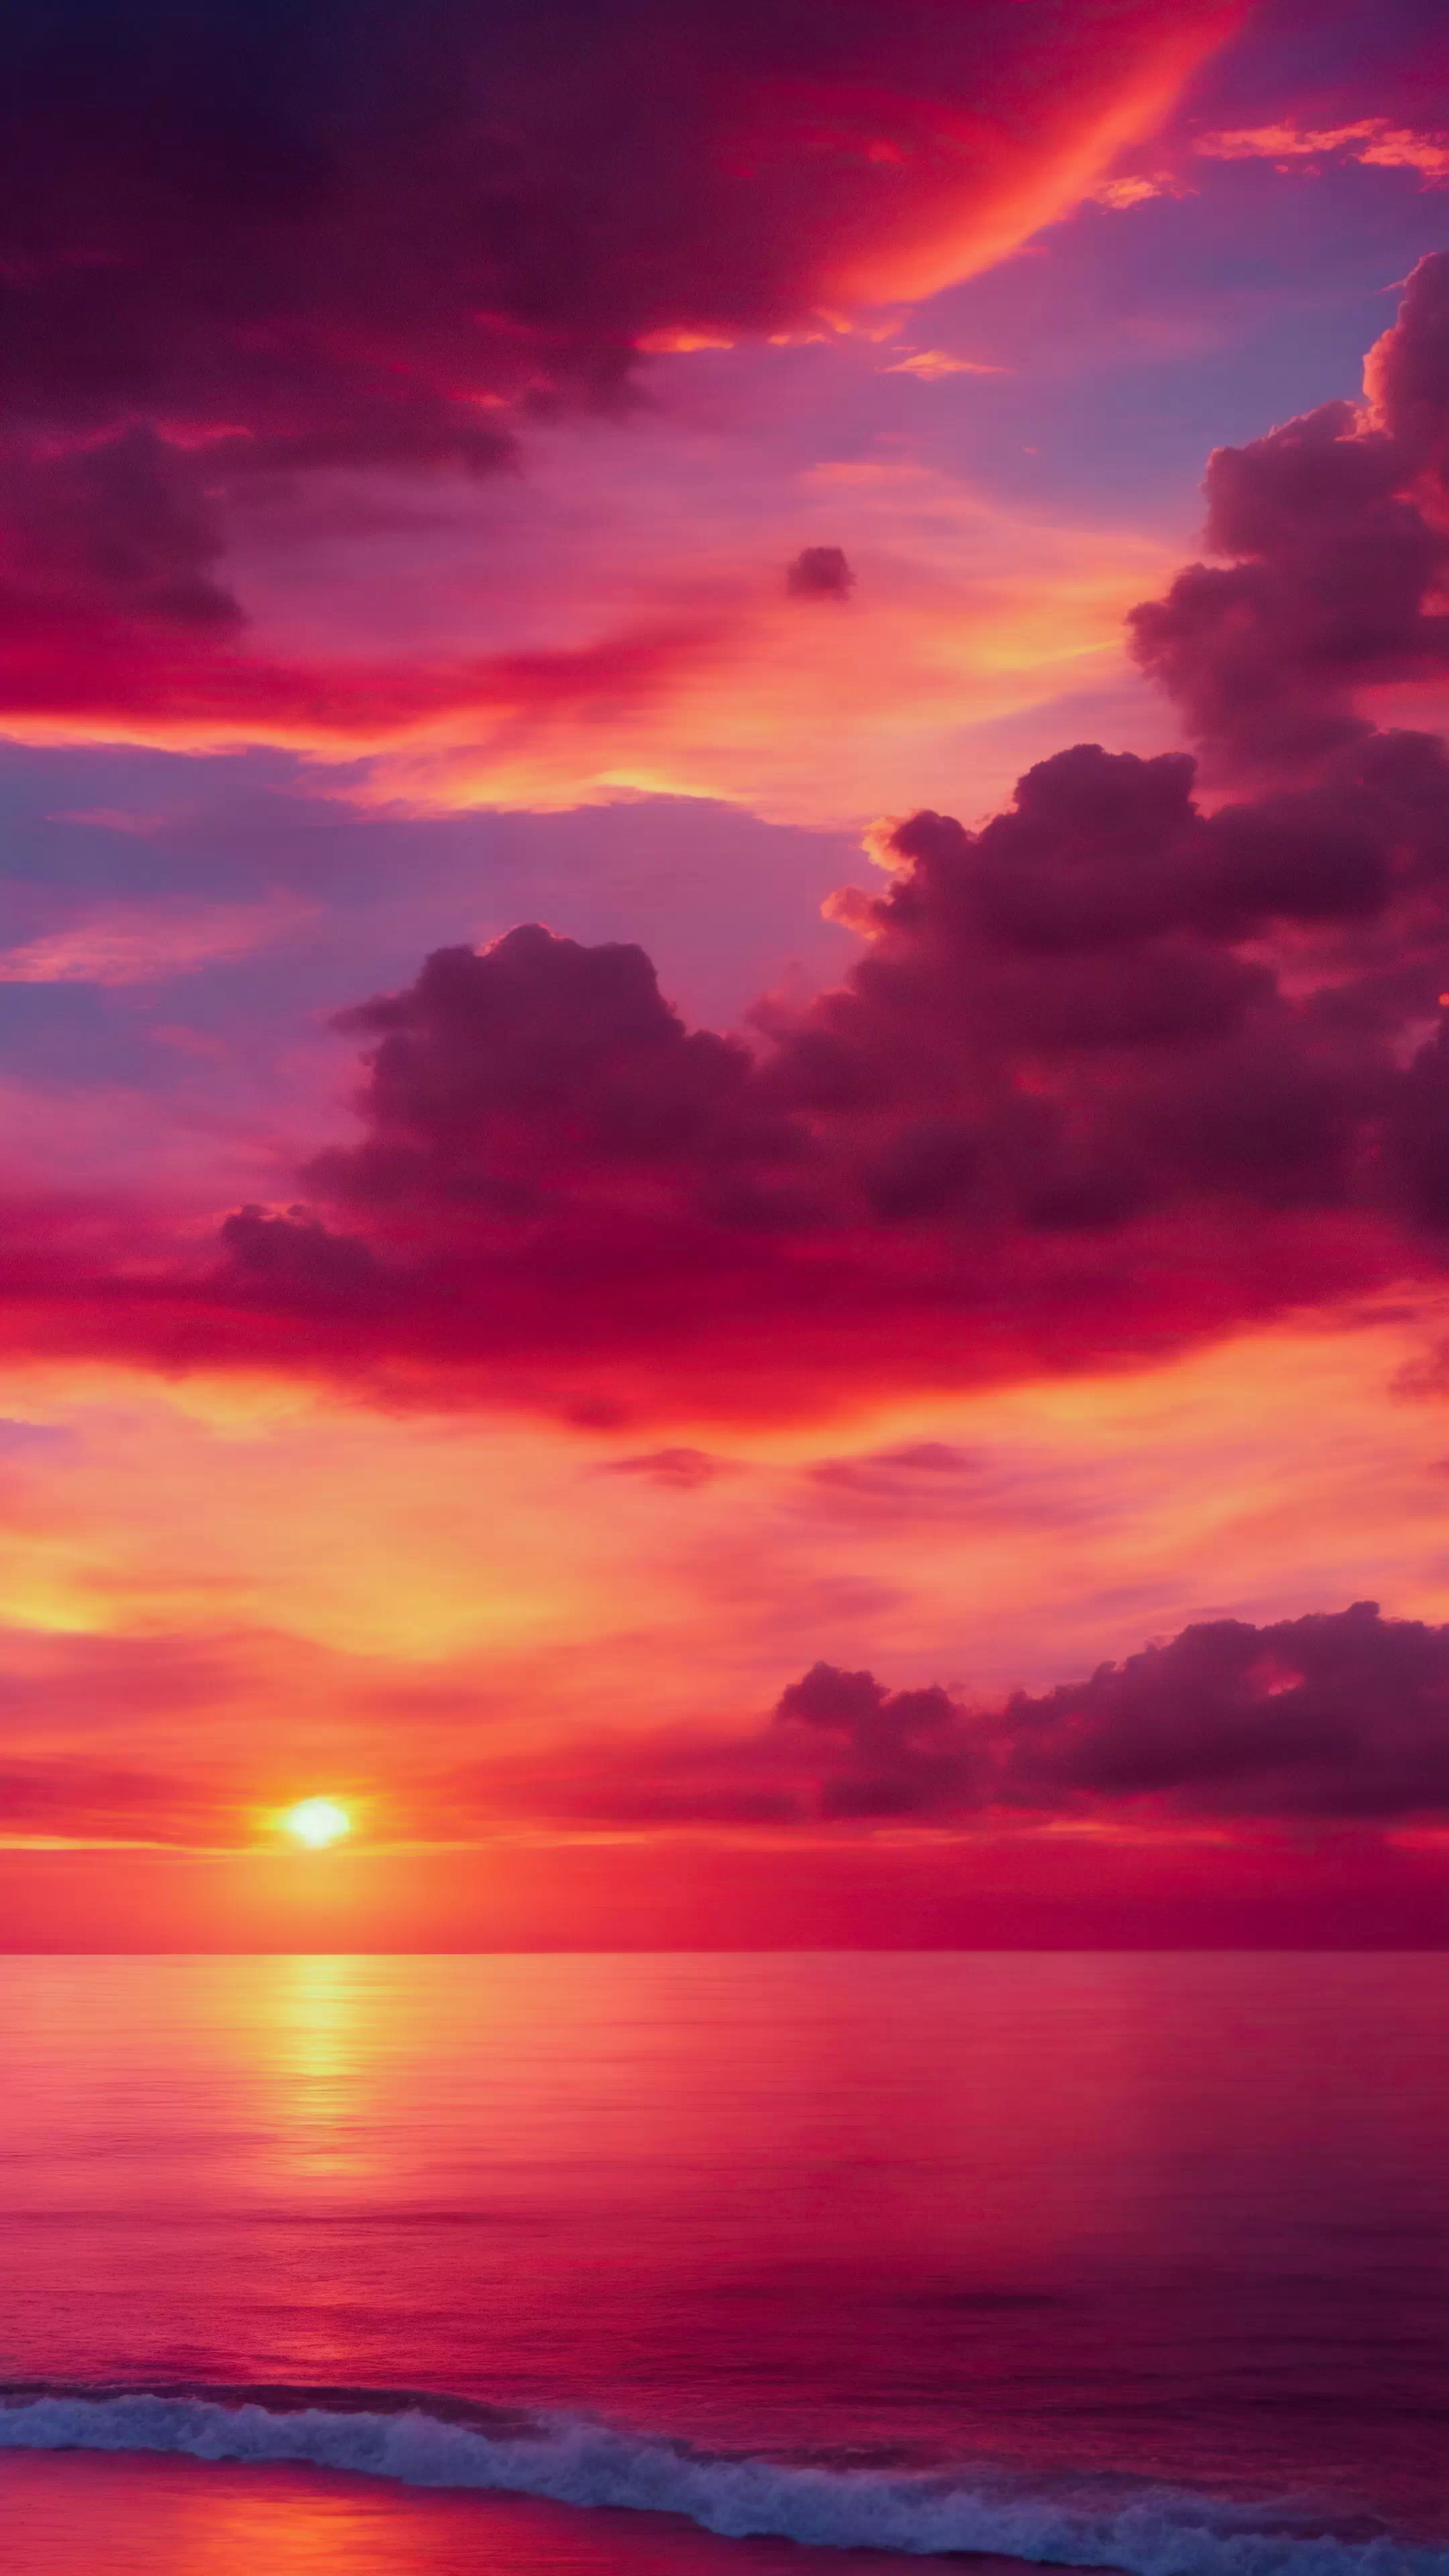 Vivez le spectacle d'un coucher de soleil avec notre fond d'écran nature HD pour iPhone, illustrant des teintes ardentes d'orange et de rose, et laissez votre écran devenir une toile pour les couleurs les plus vibrantes de la nature.